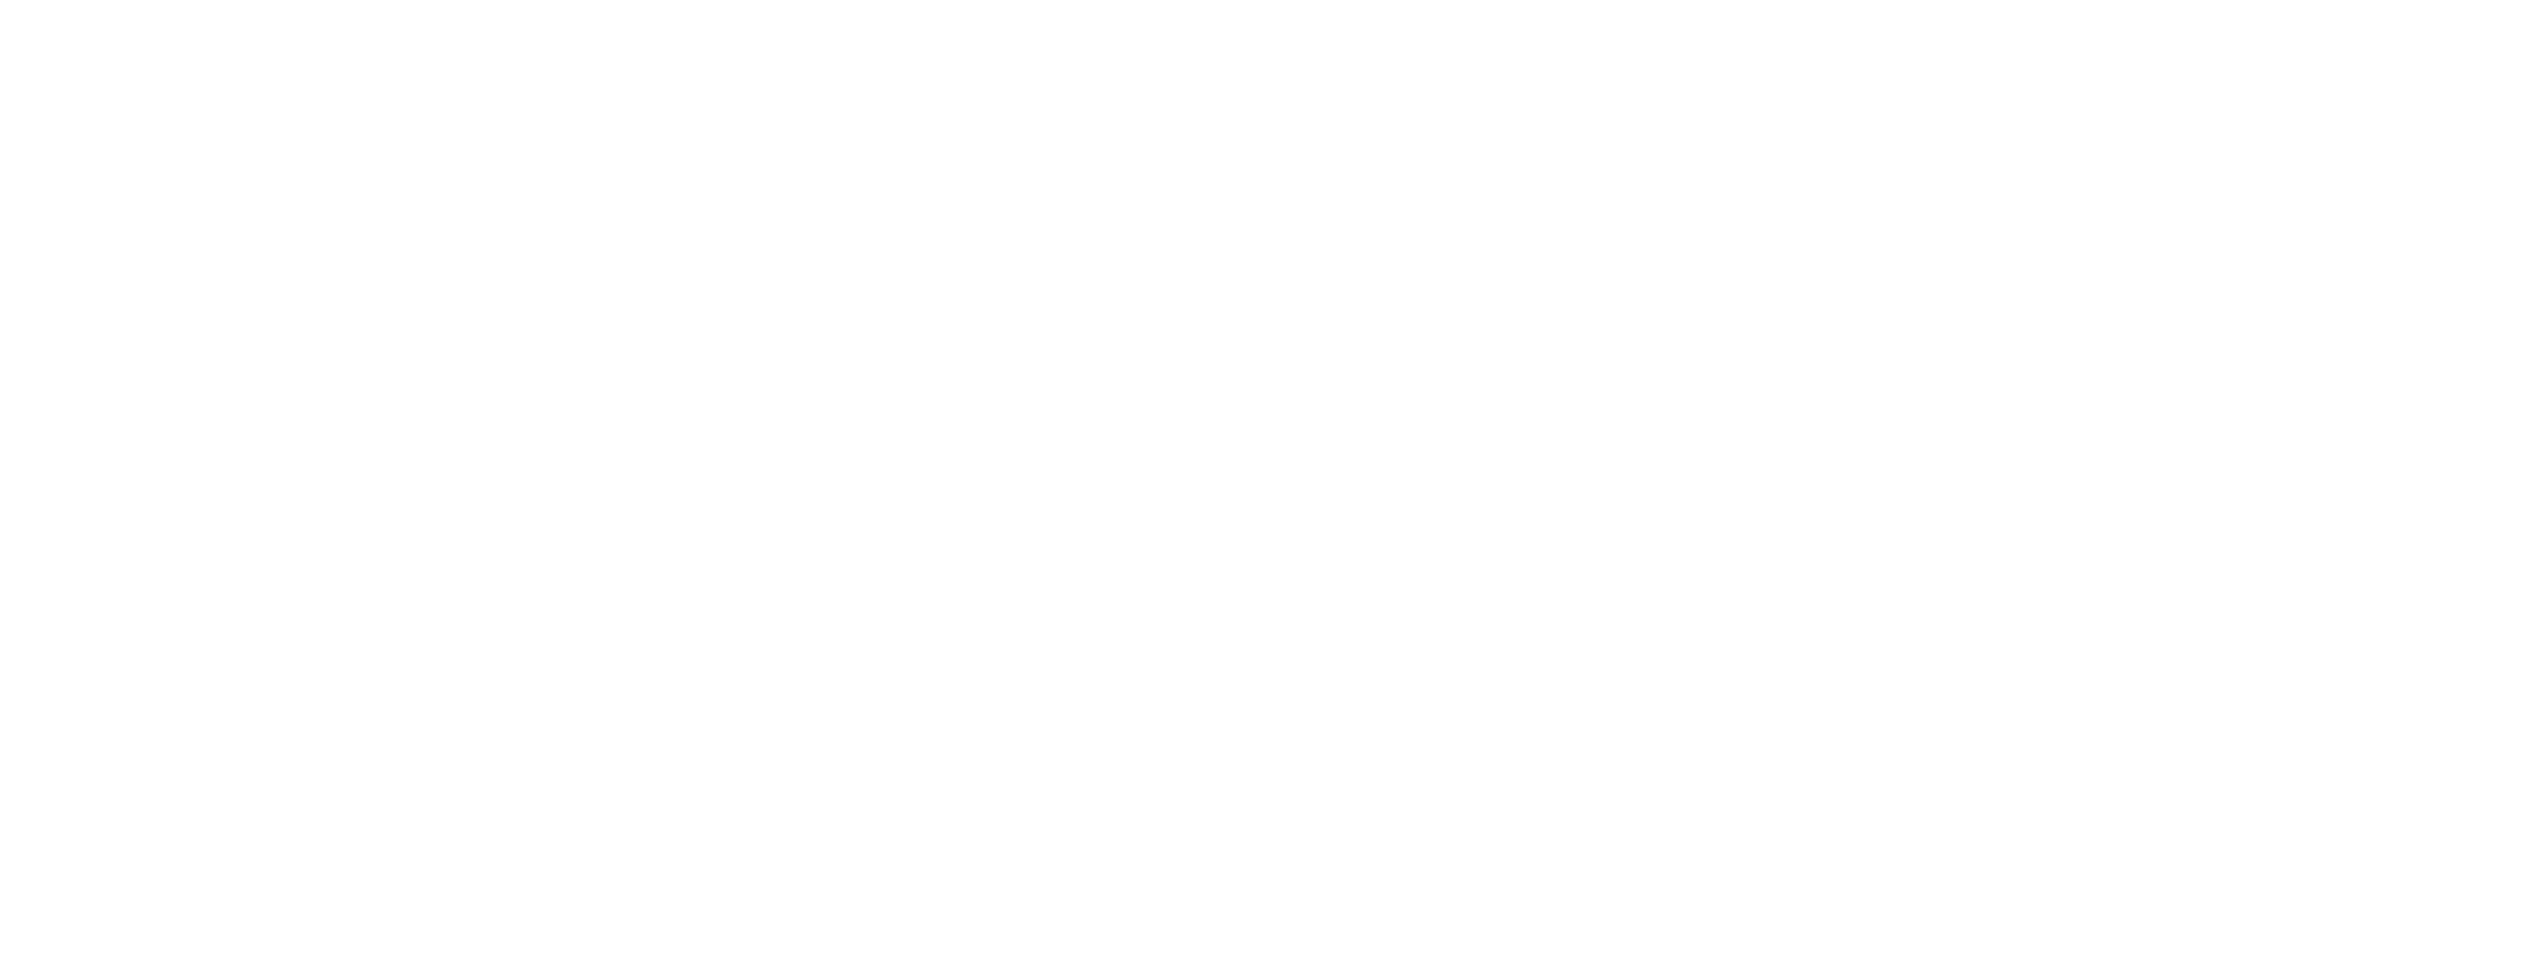 visit Brussels